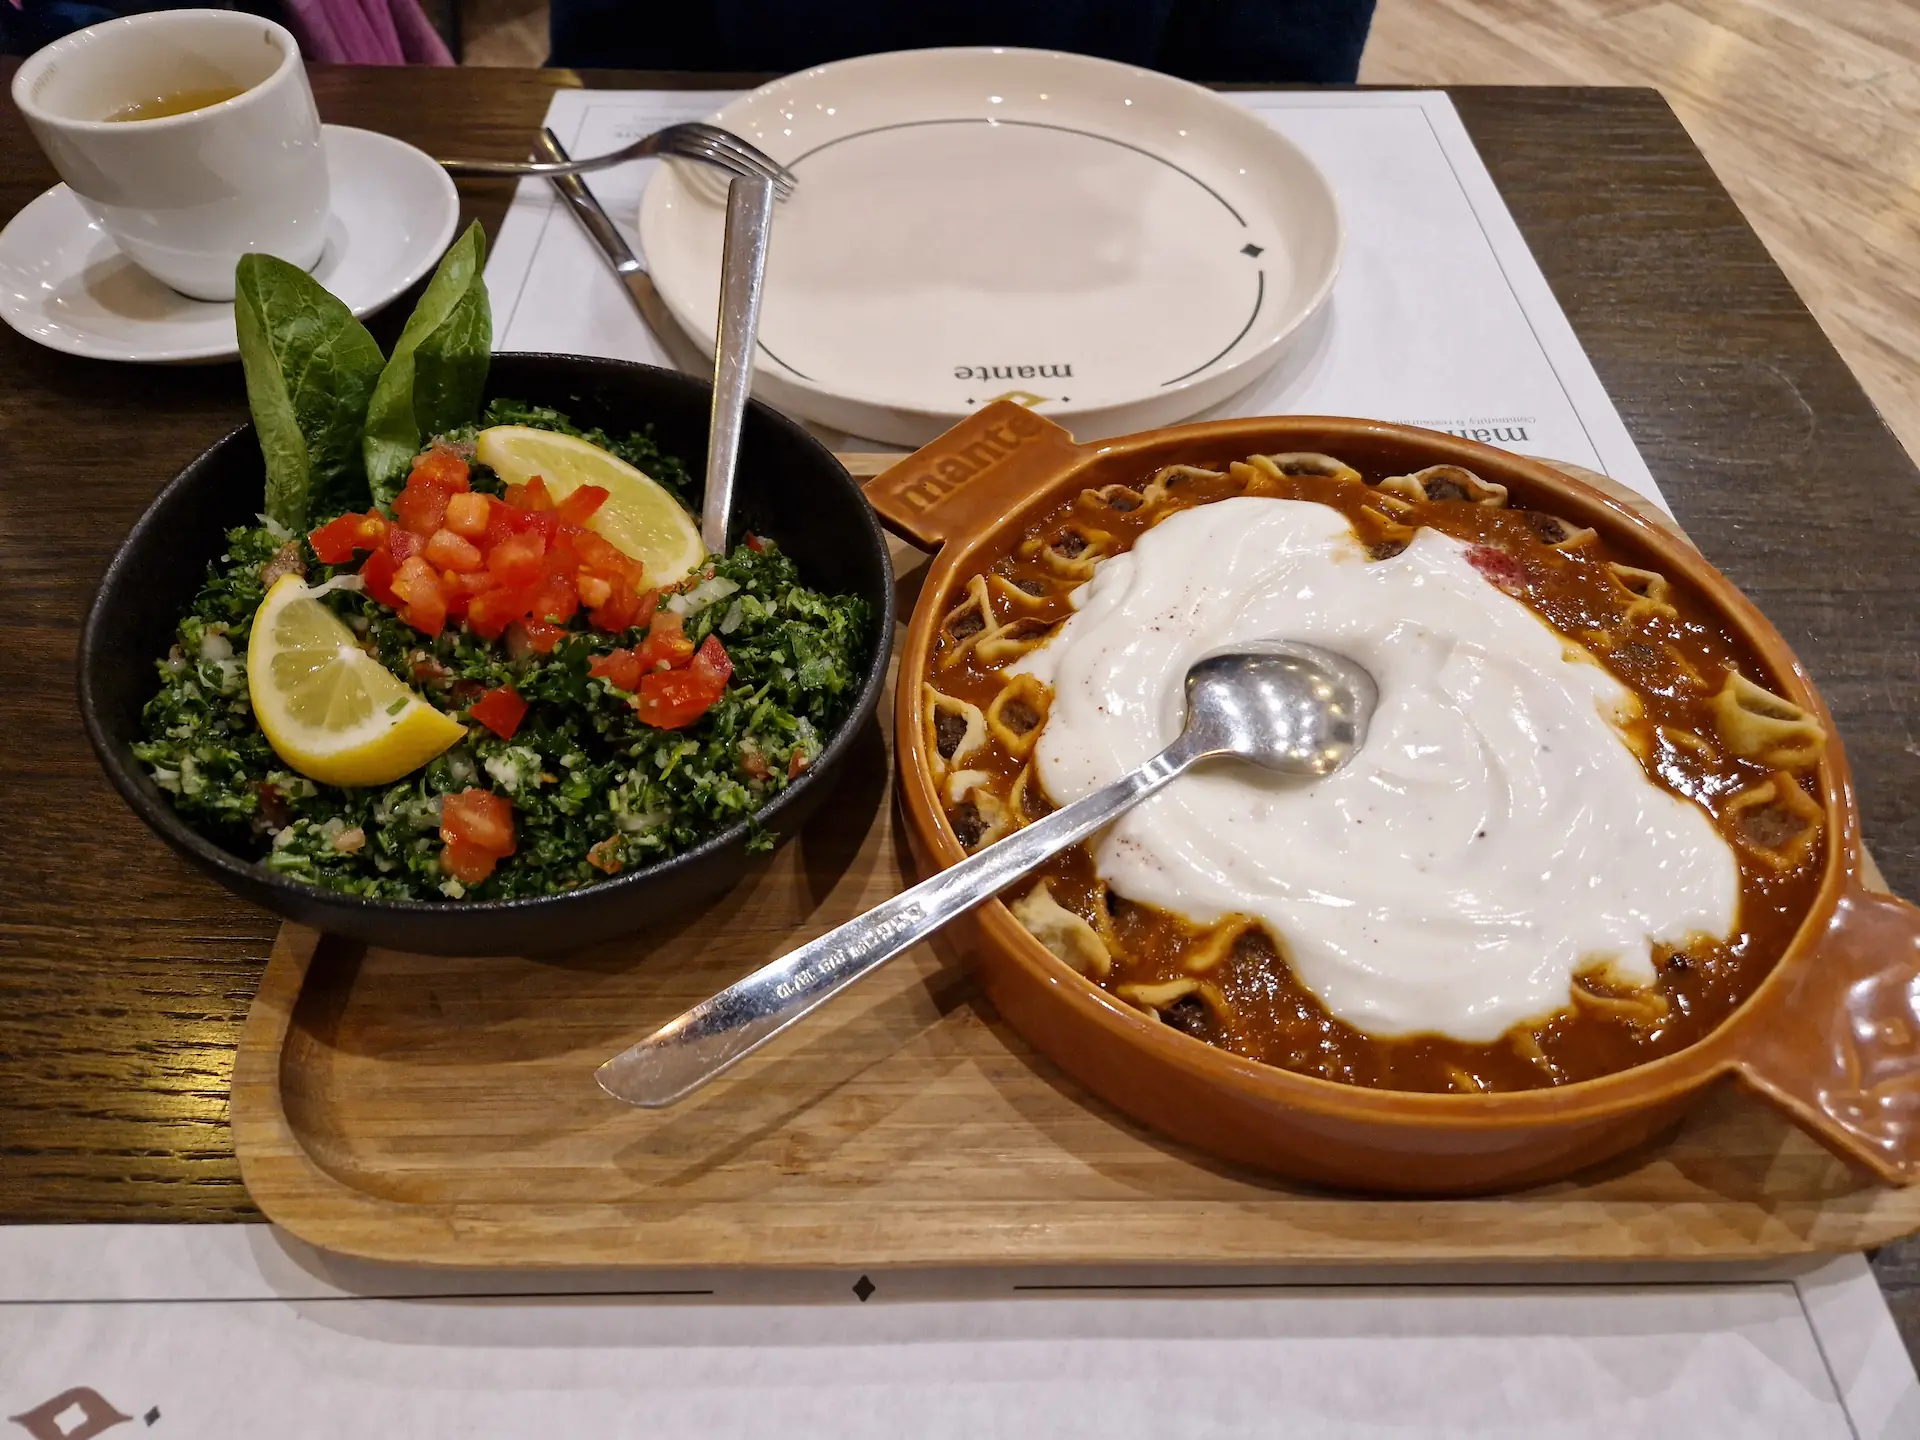 Raviolis arméniens servis dans un plat en terre cuite dans de la sauce tomate et recouvert de yaourt